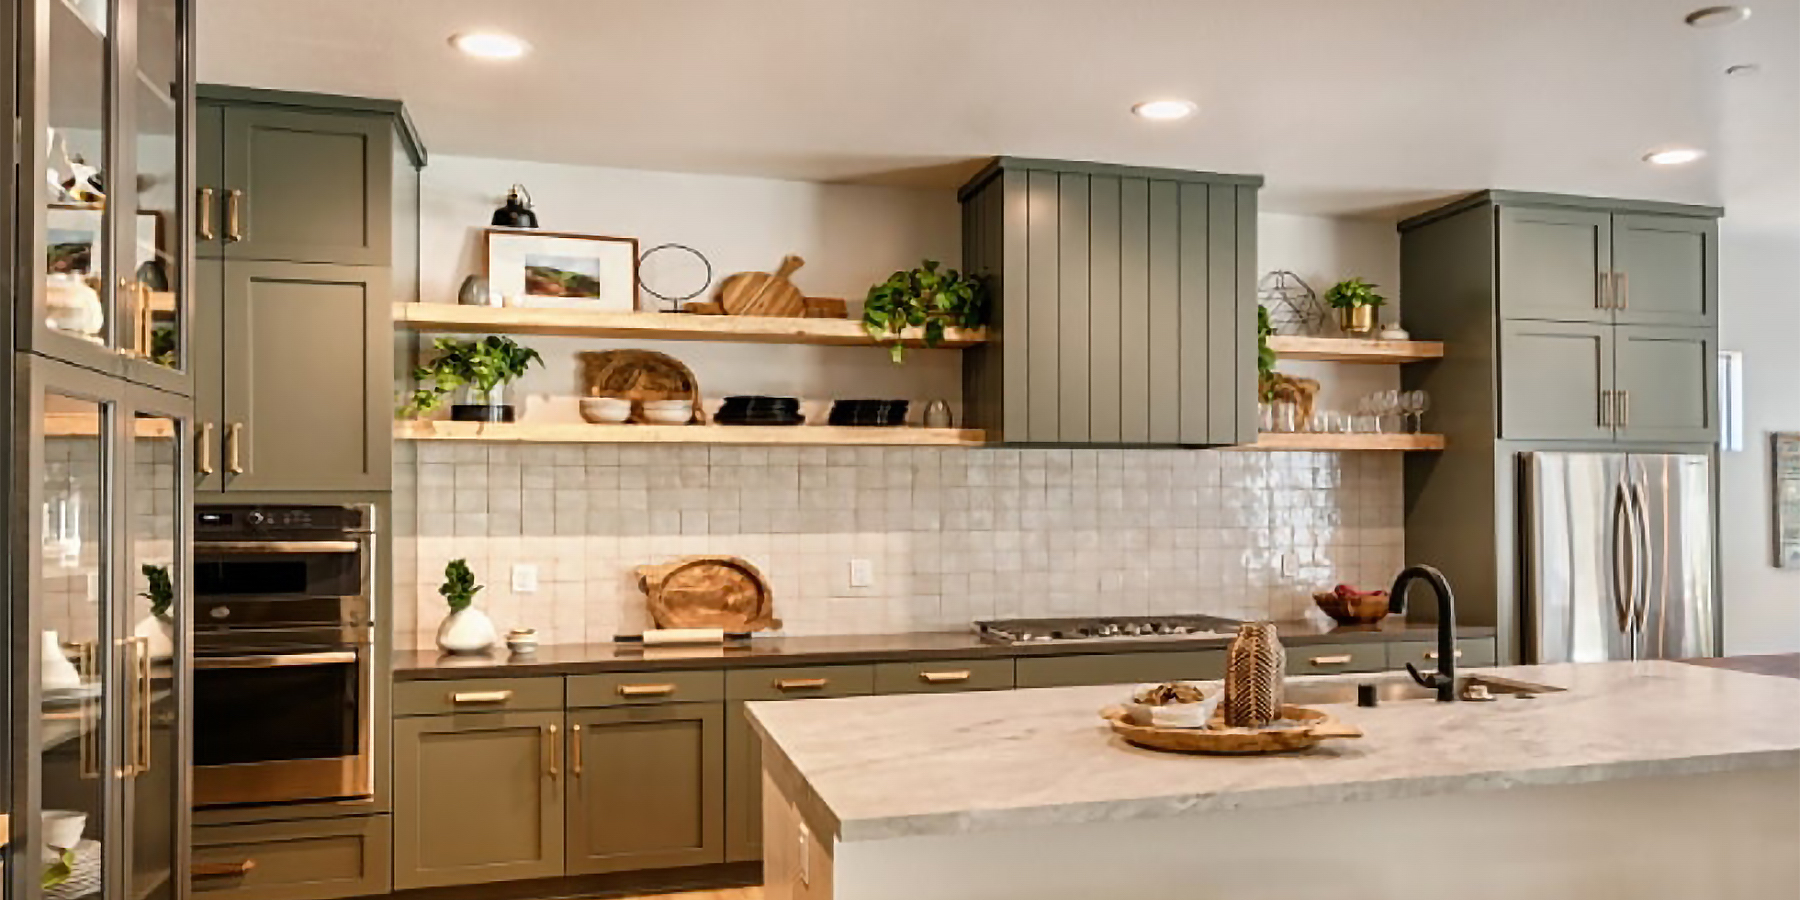 Pardee Homes interior kitchen design